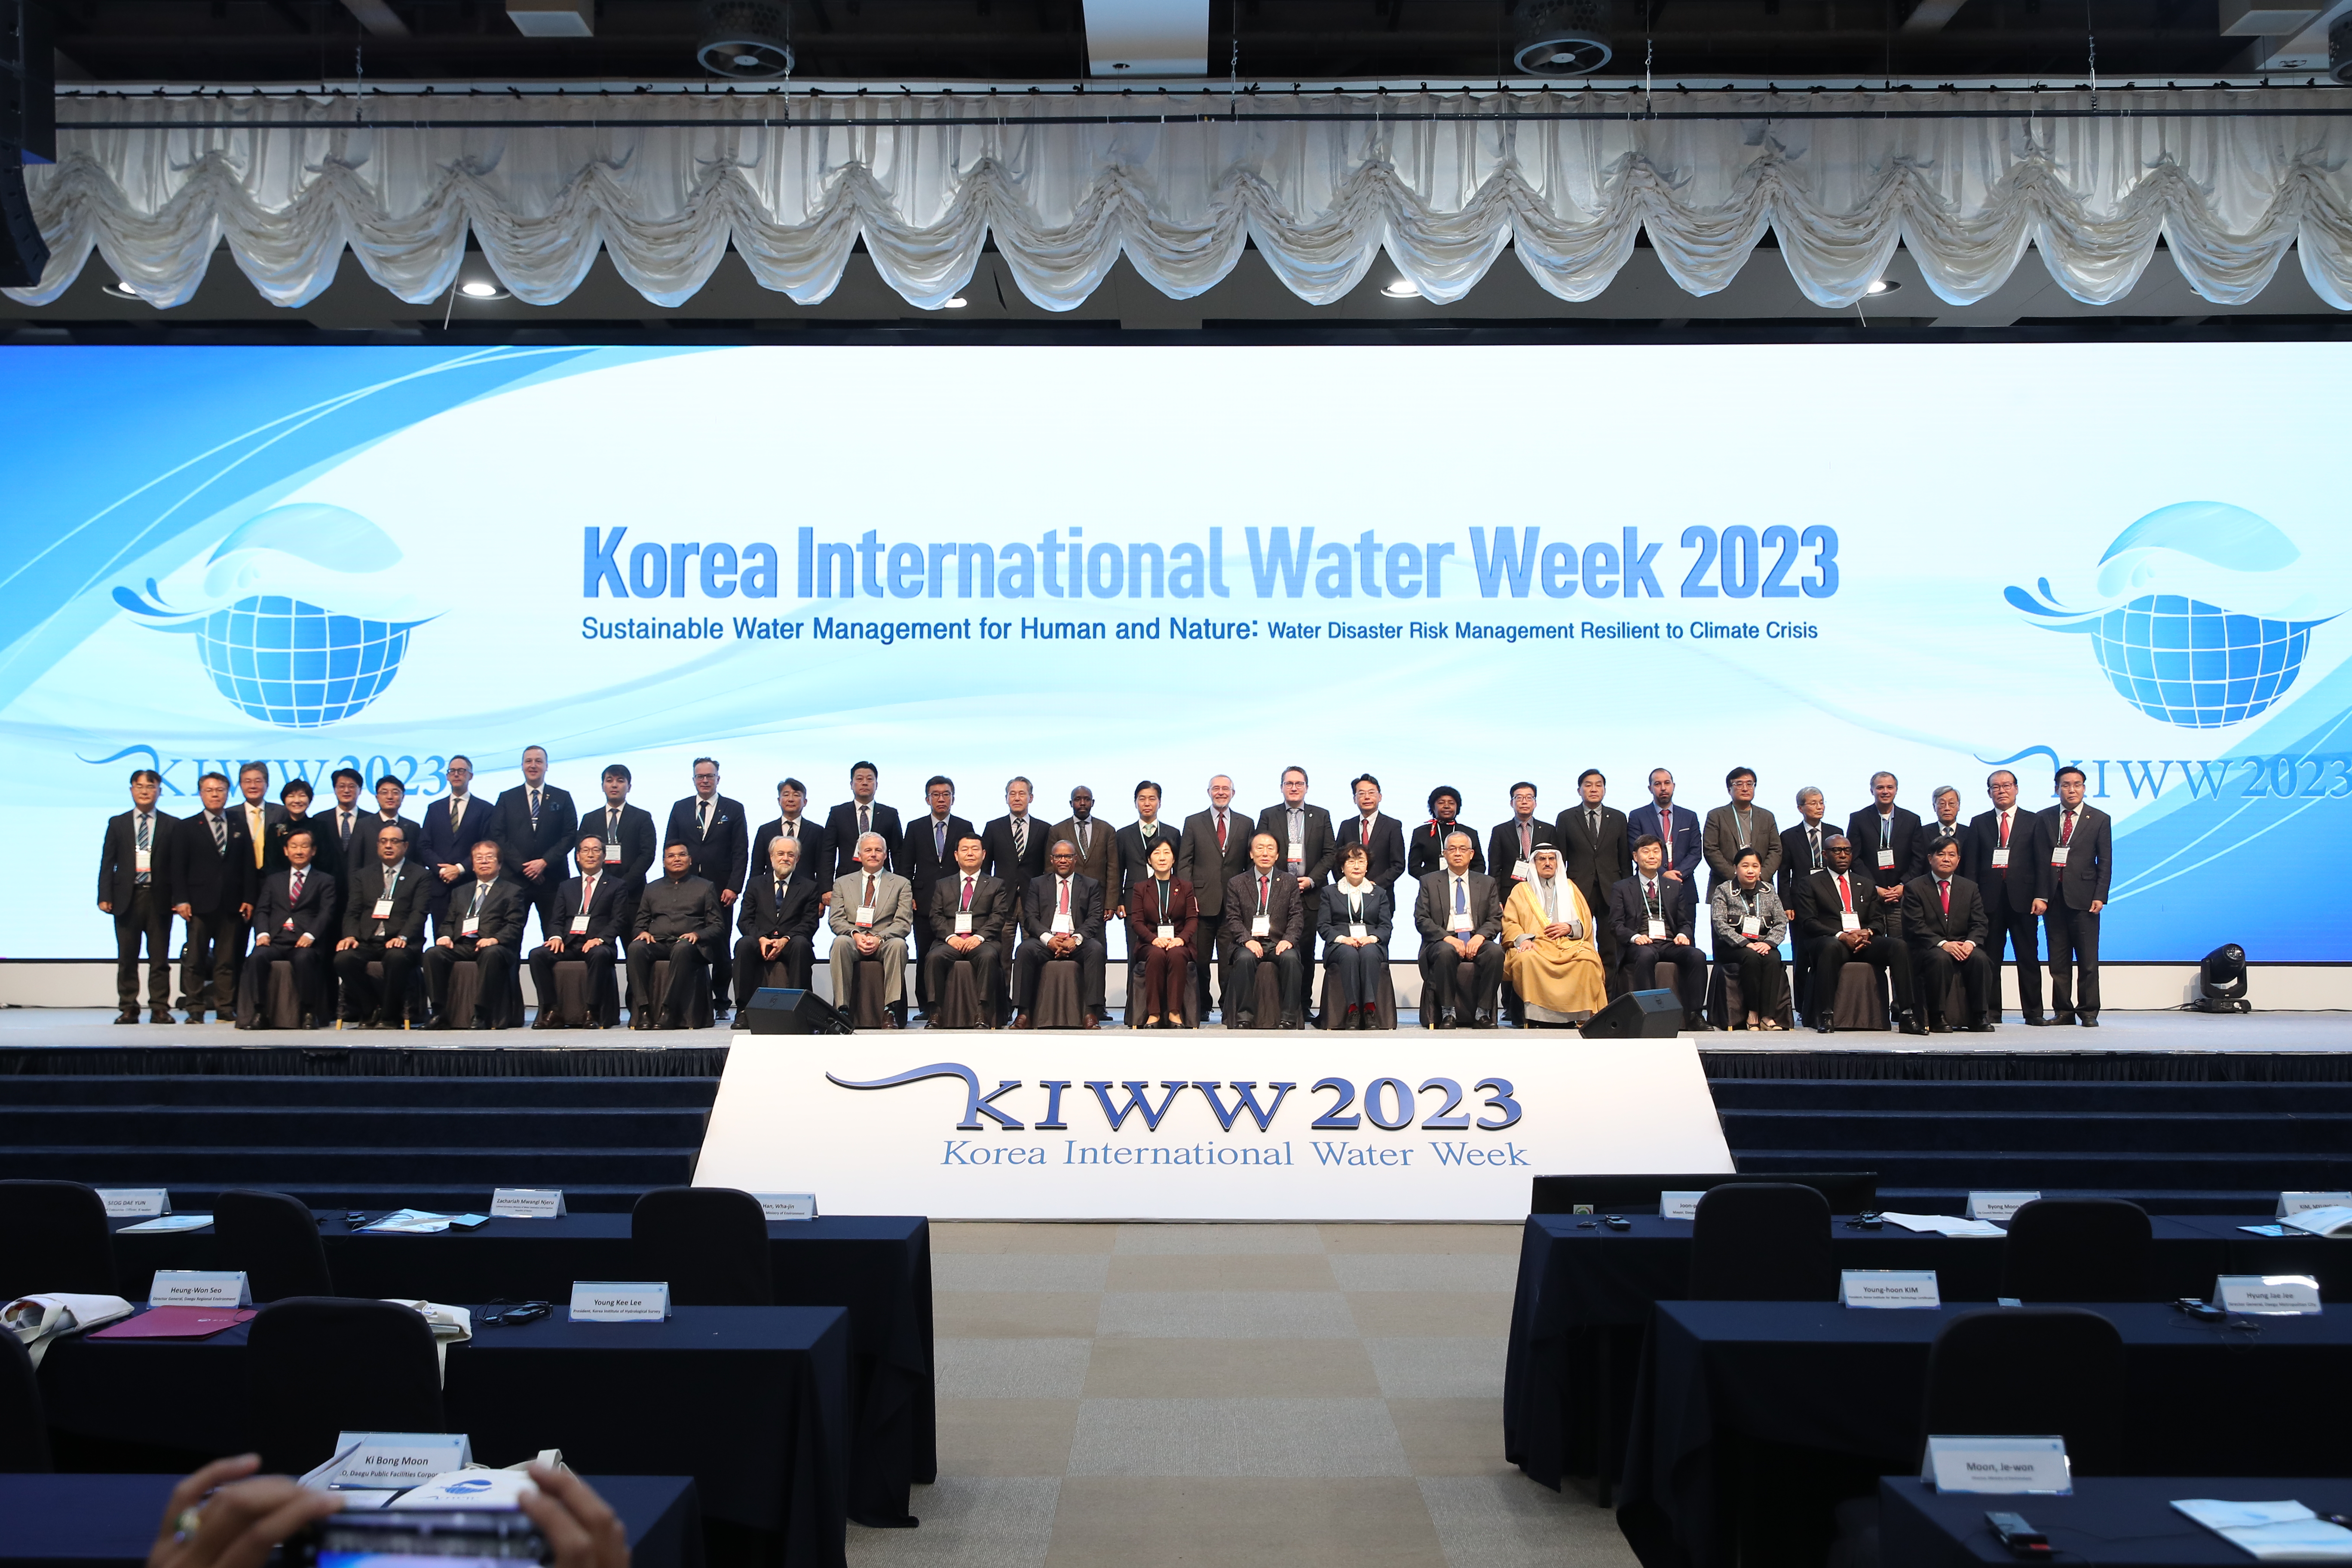 Korea International Water Week 2023